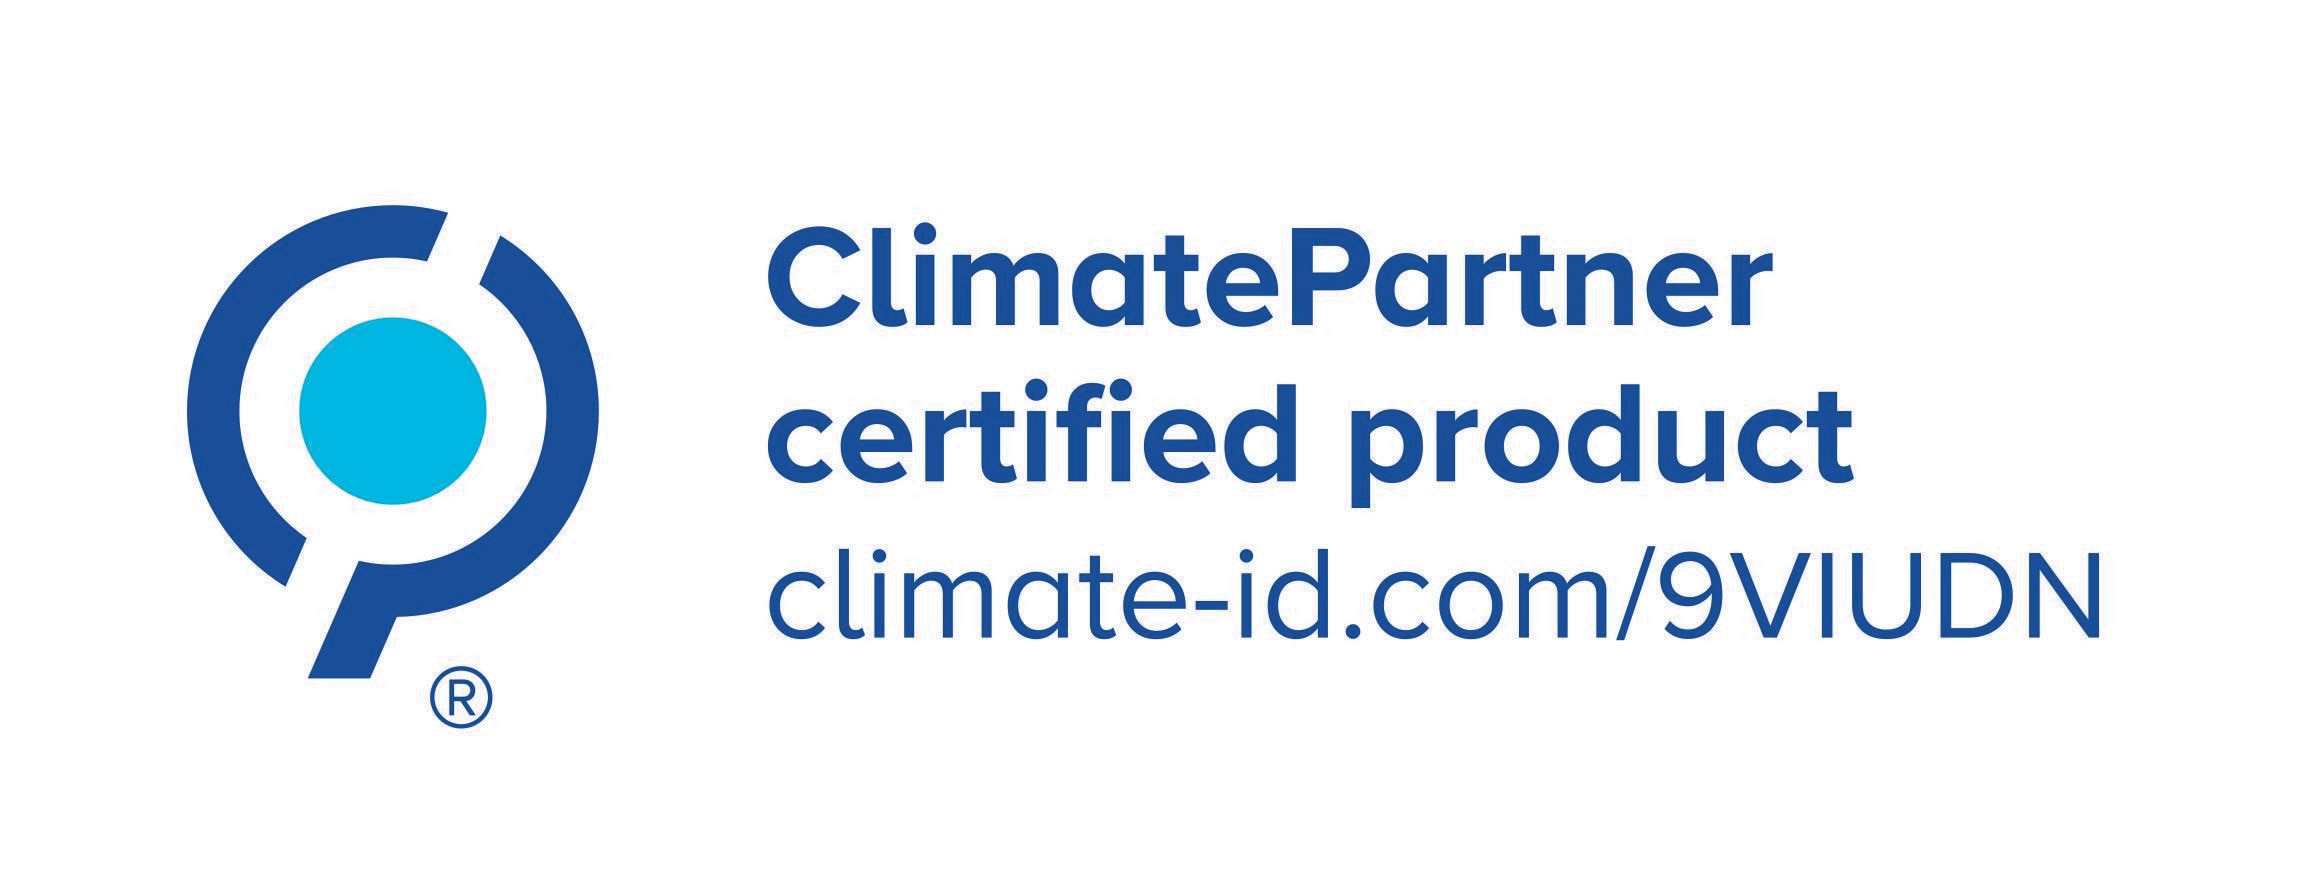 Koldioxidneutral – tillverkas av inköpt certifierad förnybar el och återstående koldioxidutsläpp kompenseras via krediter från klimatprojekt